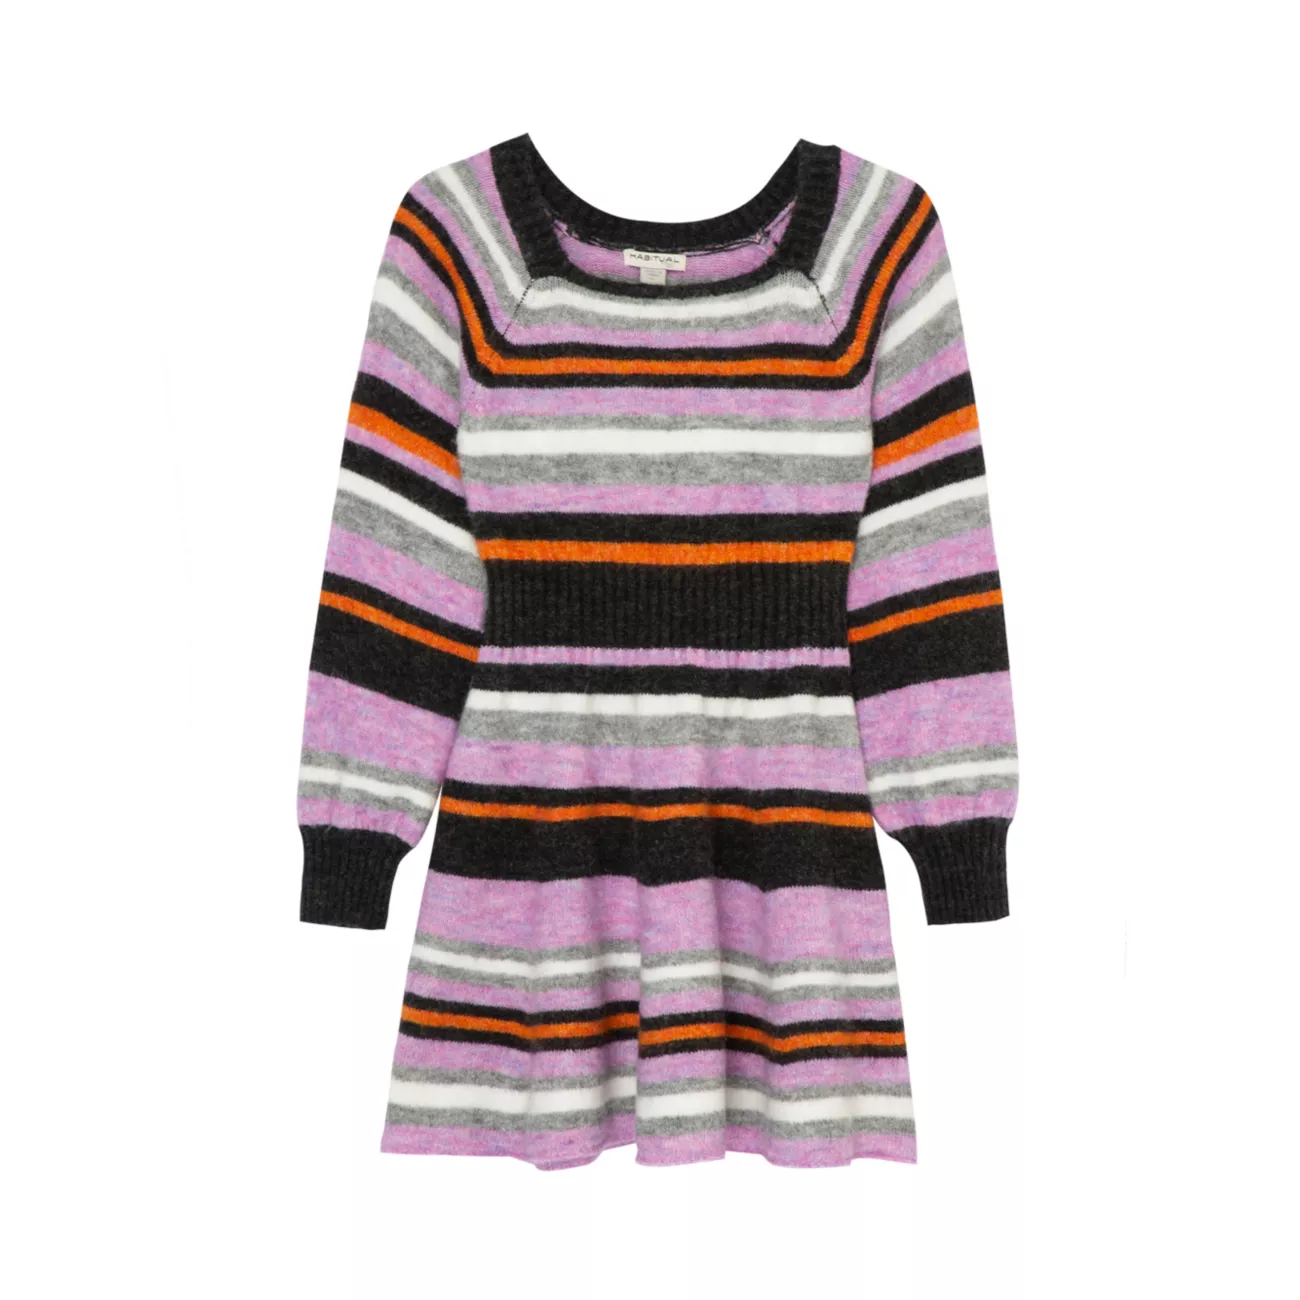 Расклешенное платье-свитер в несколько полосок для маленькой девочки Habitual